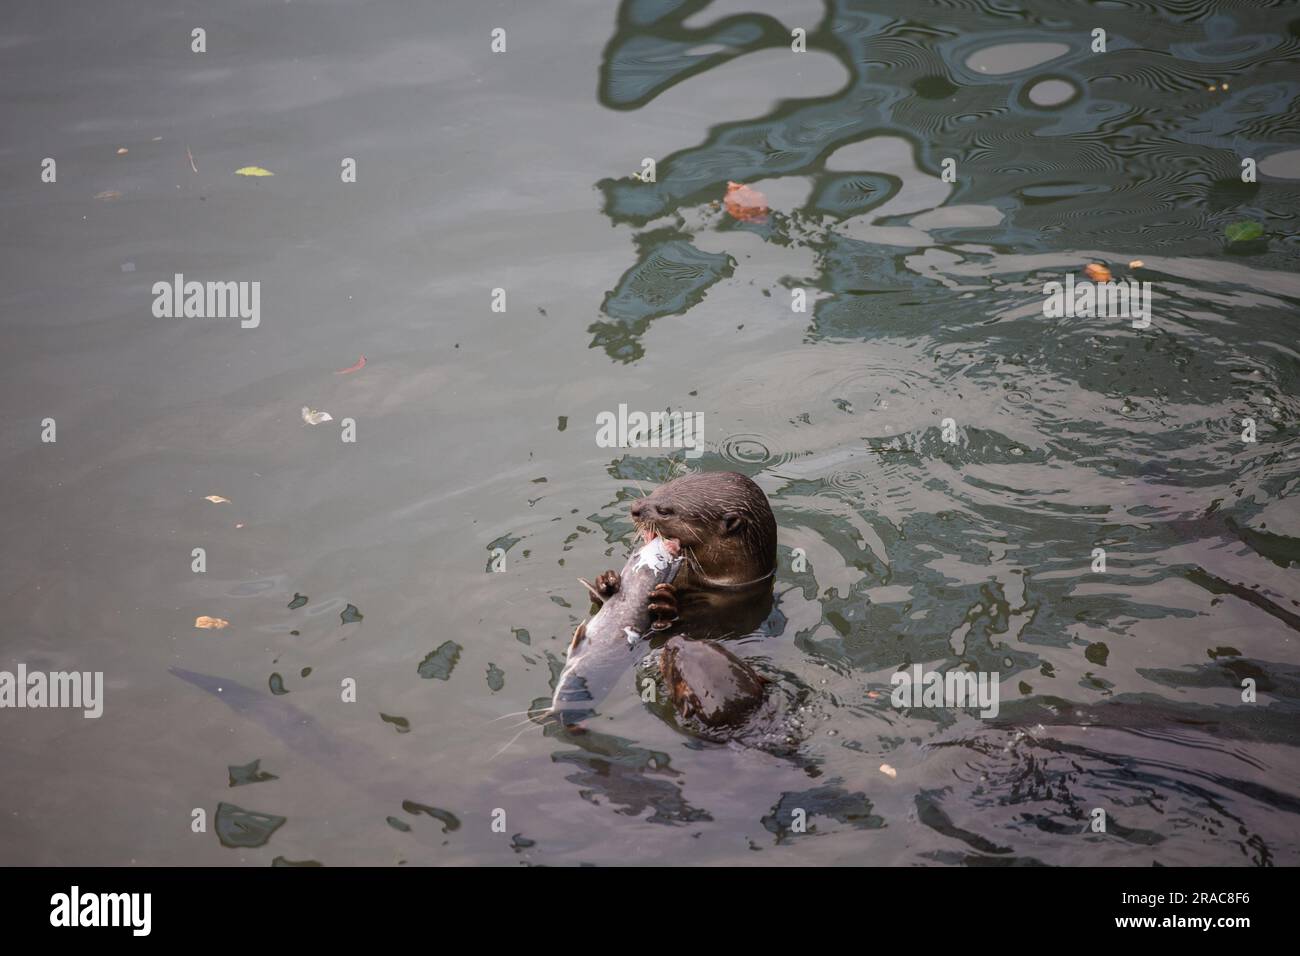 Ein Otter im Wasser, der einen großen Fisch beißt, während der andere Otter auf einen Anteil Fleisch hofft. Stockfoto